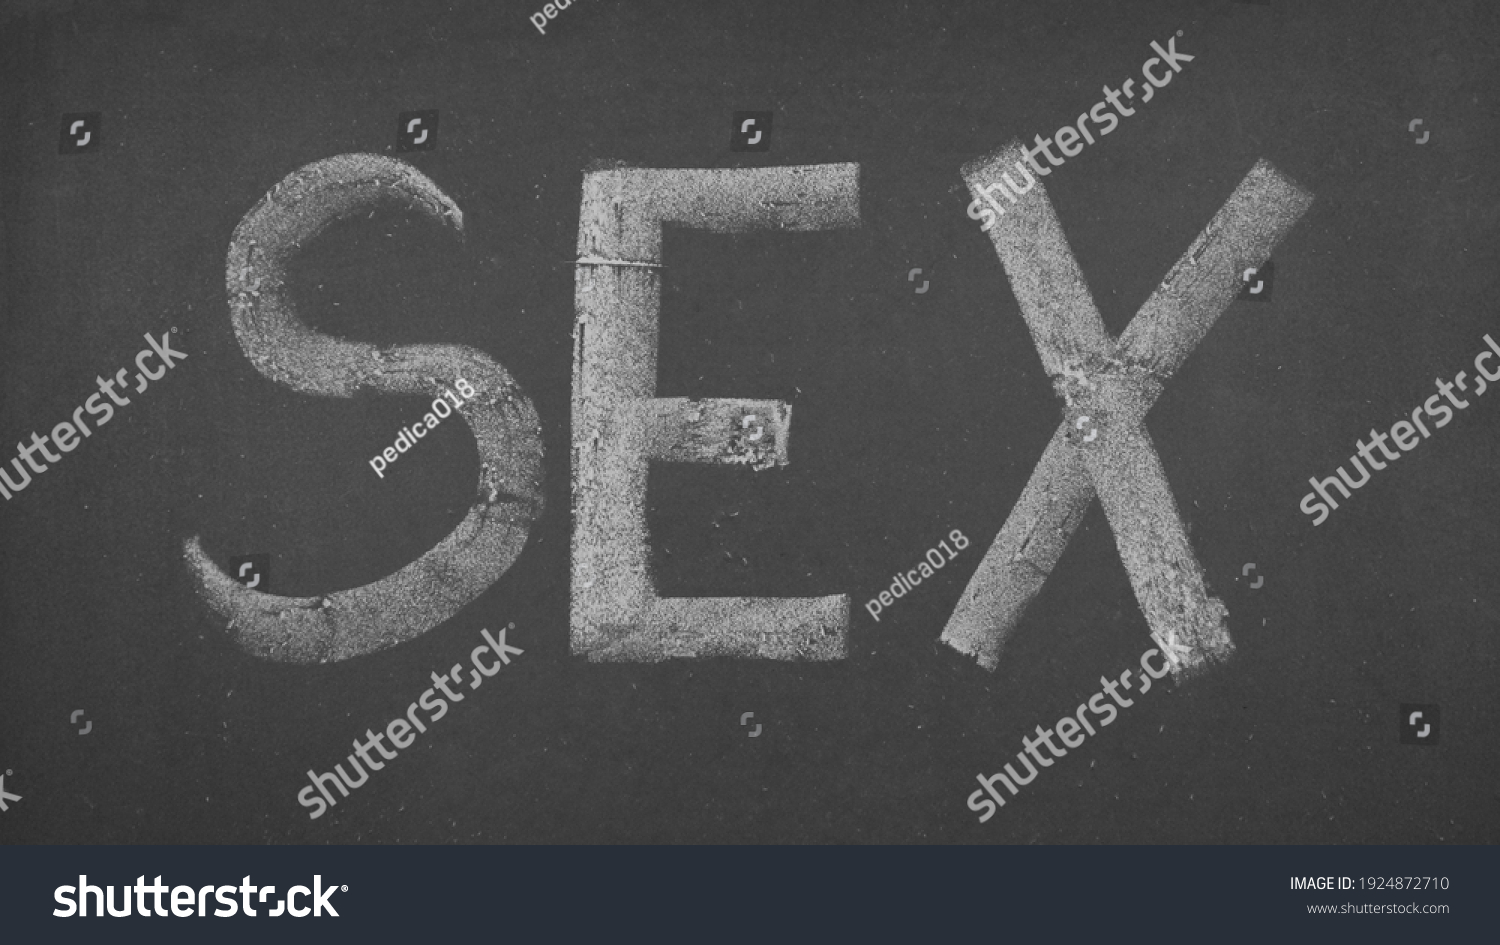 Φωτογραφία στοκ 1924872710 για Sex Letters Written Chalk Blackboard Shutter...